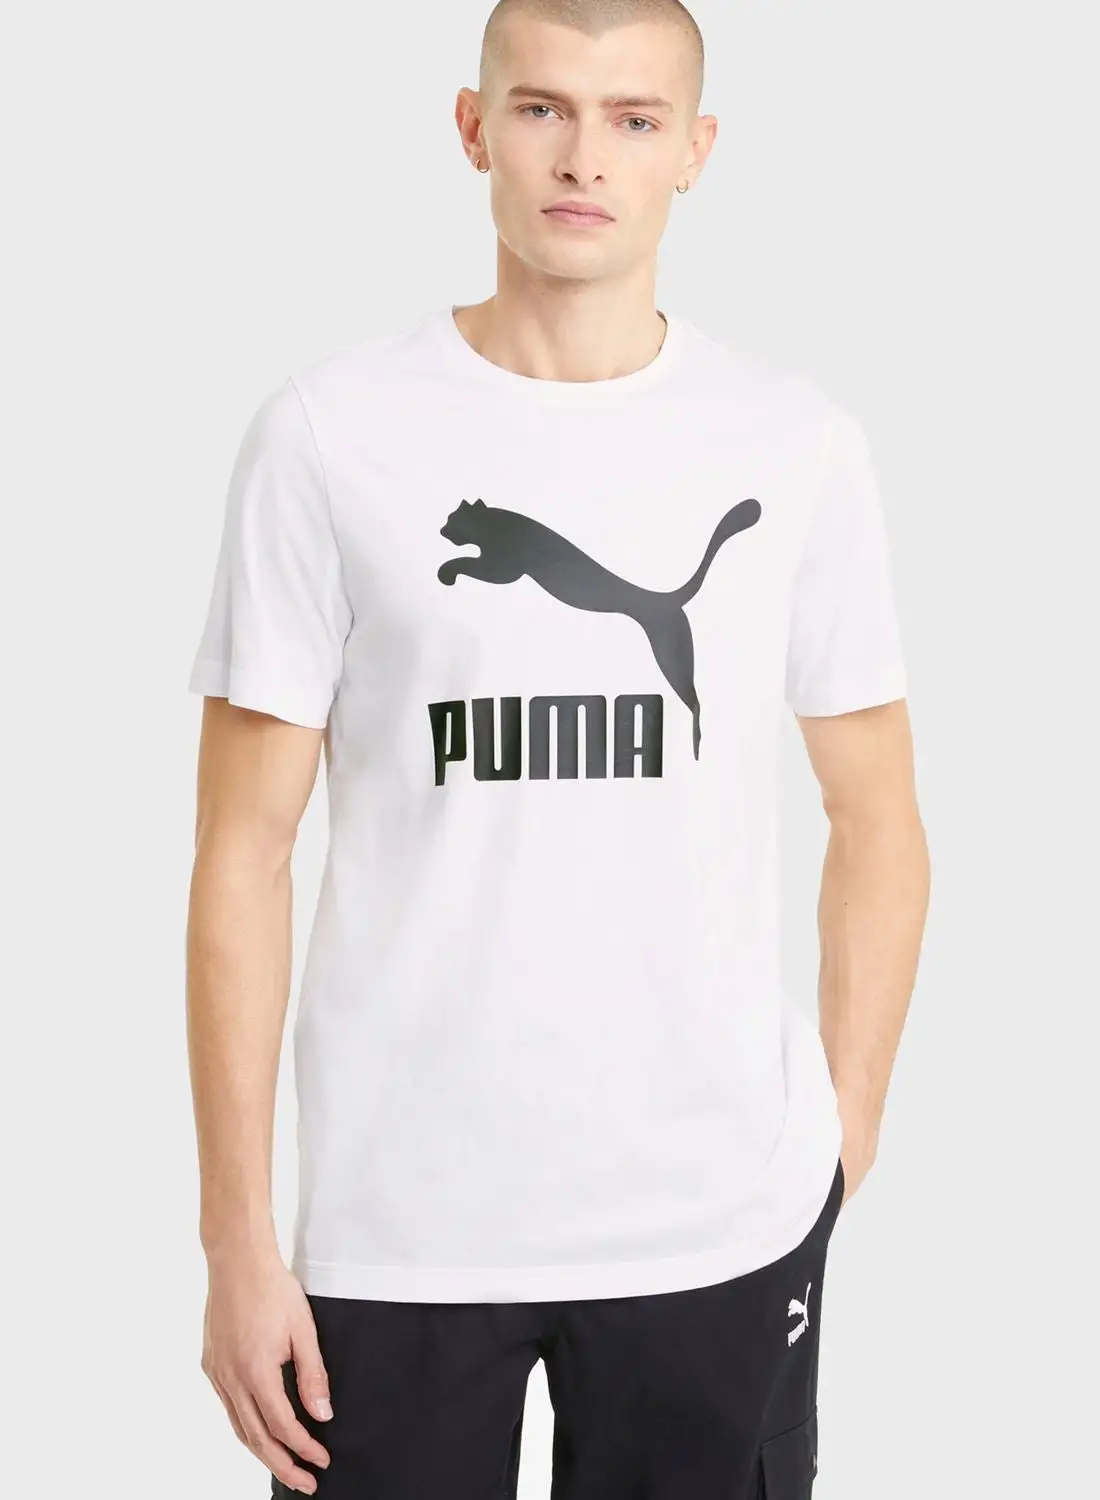 PUMA Classics men t-shirt